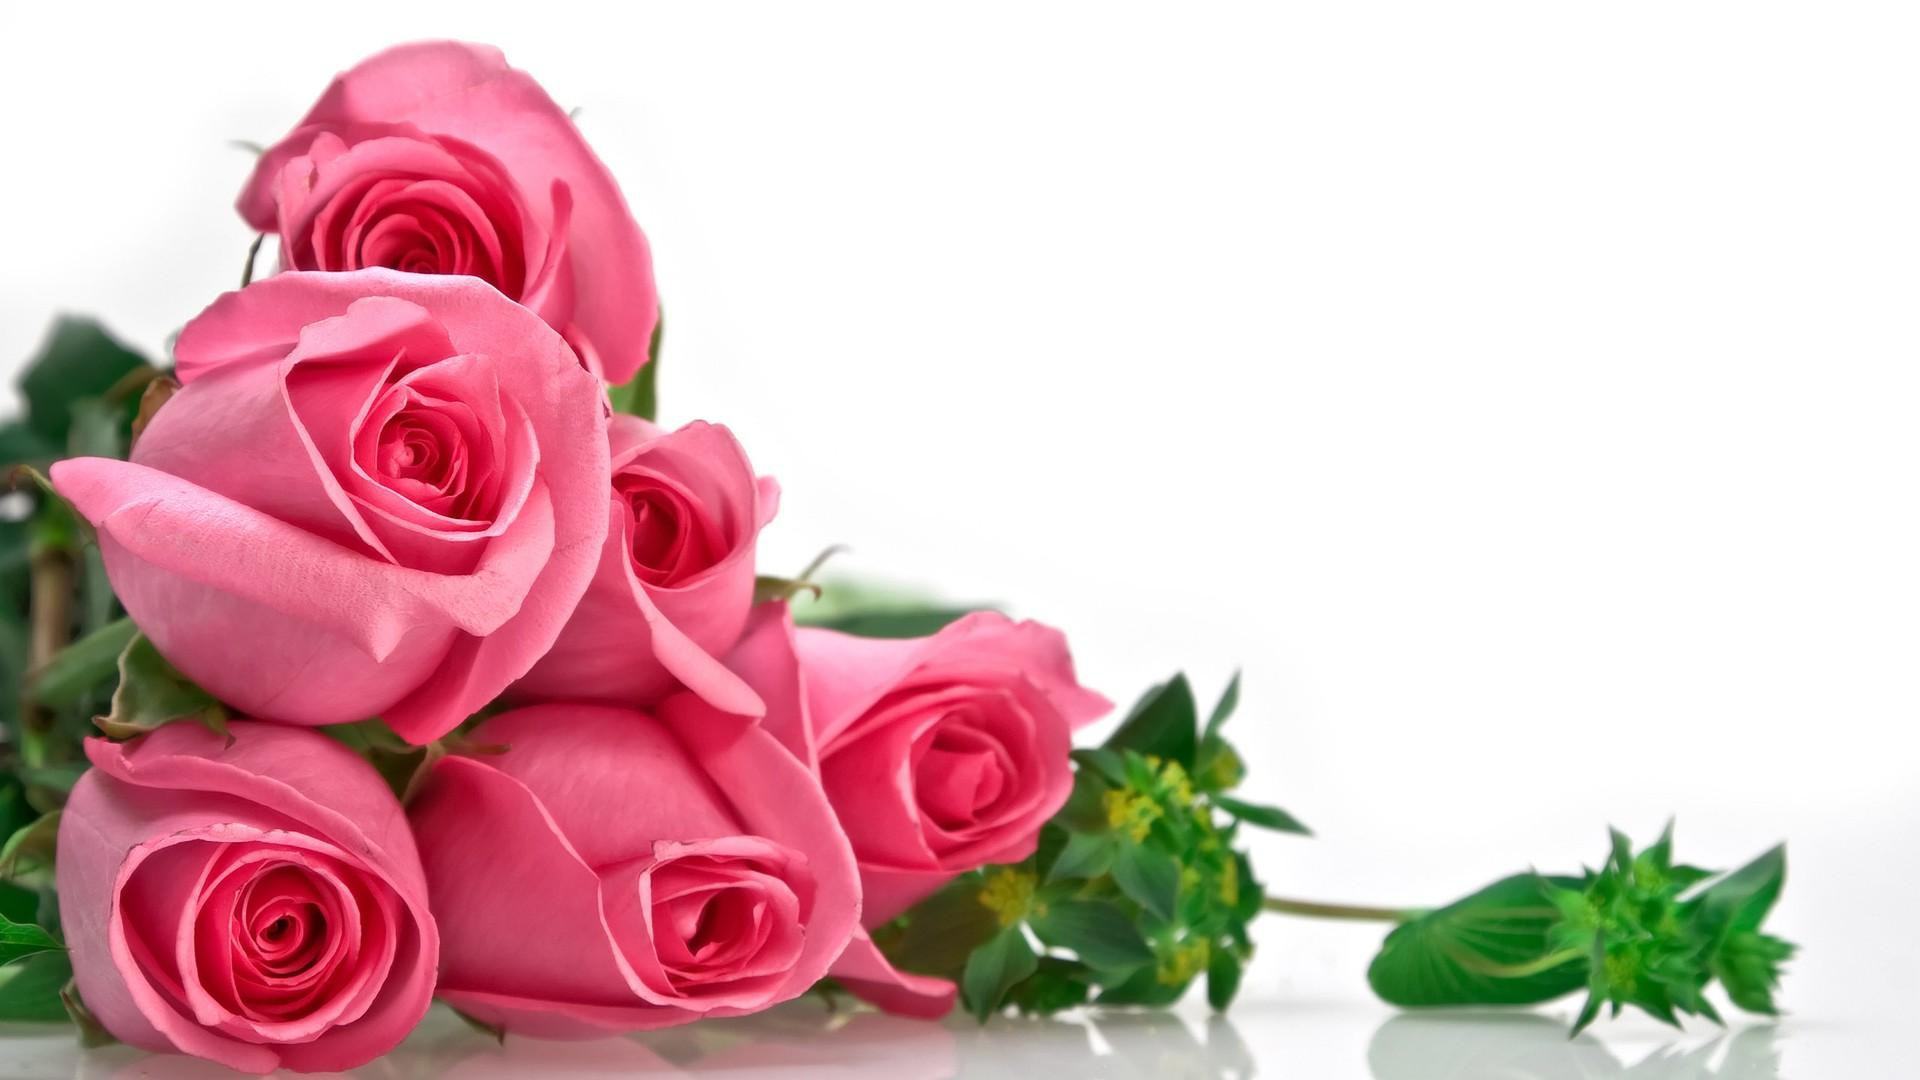 Ý nghĩa hoa hồng: Với những loài hoa hồng có màu sắc và hình dáng khác nhau, mỗi bông hoa đều mang ý nghĩa khác nhau như sự tinh tế, tình yêu lãng mạn, sự kiên định, sự tôn trọng, sự trăng tròn và nhiều hơn nữa. Khám phá những ý nghĩa hóa hồng đằng sau mỗi bông hoa bằng cách xem hình ảnh đầy màu sắc và tuyệt đẹp.